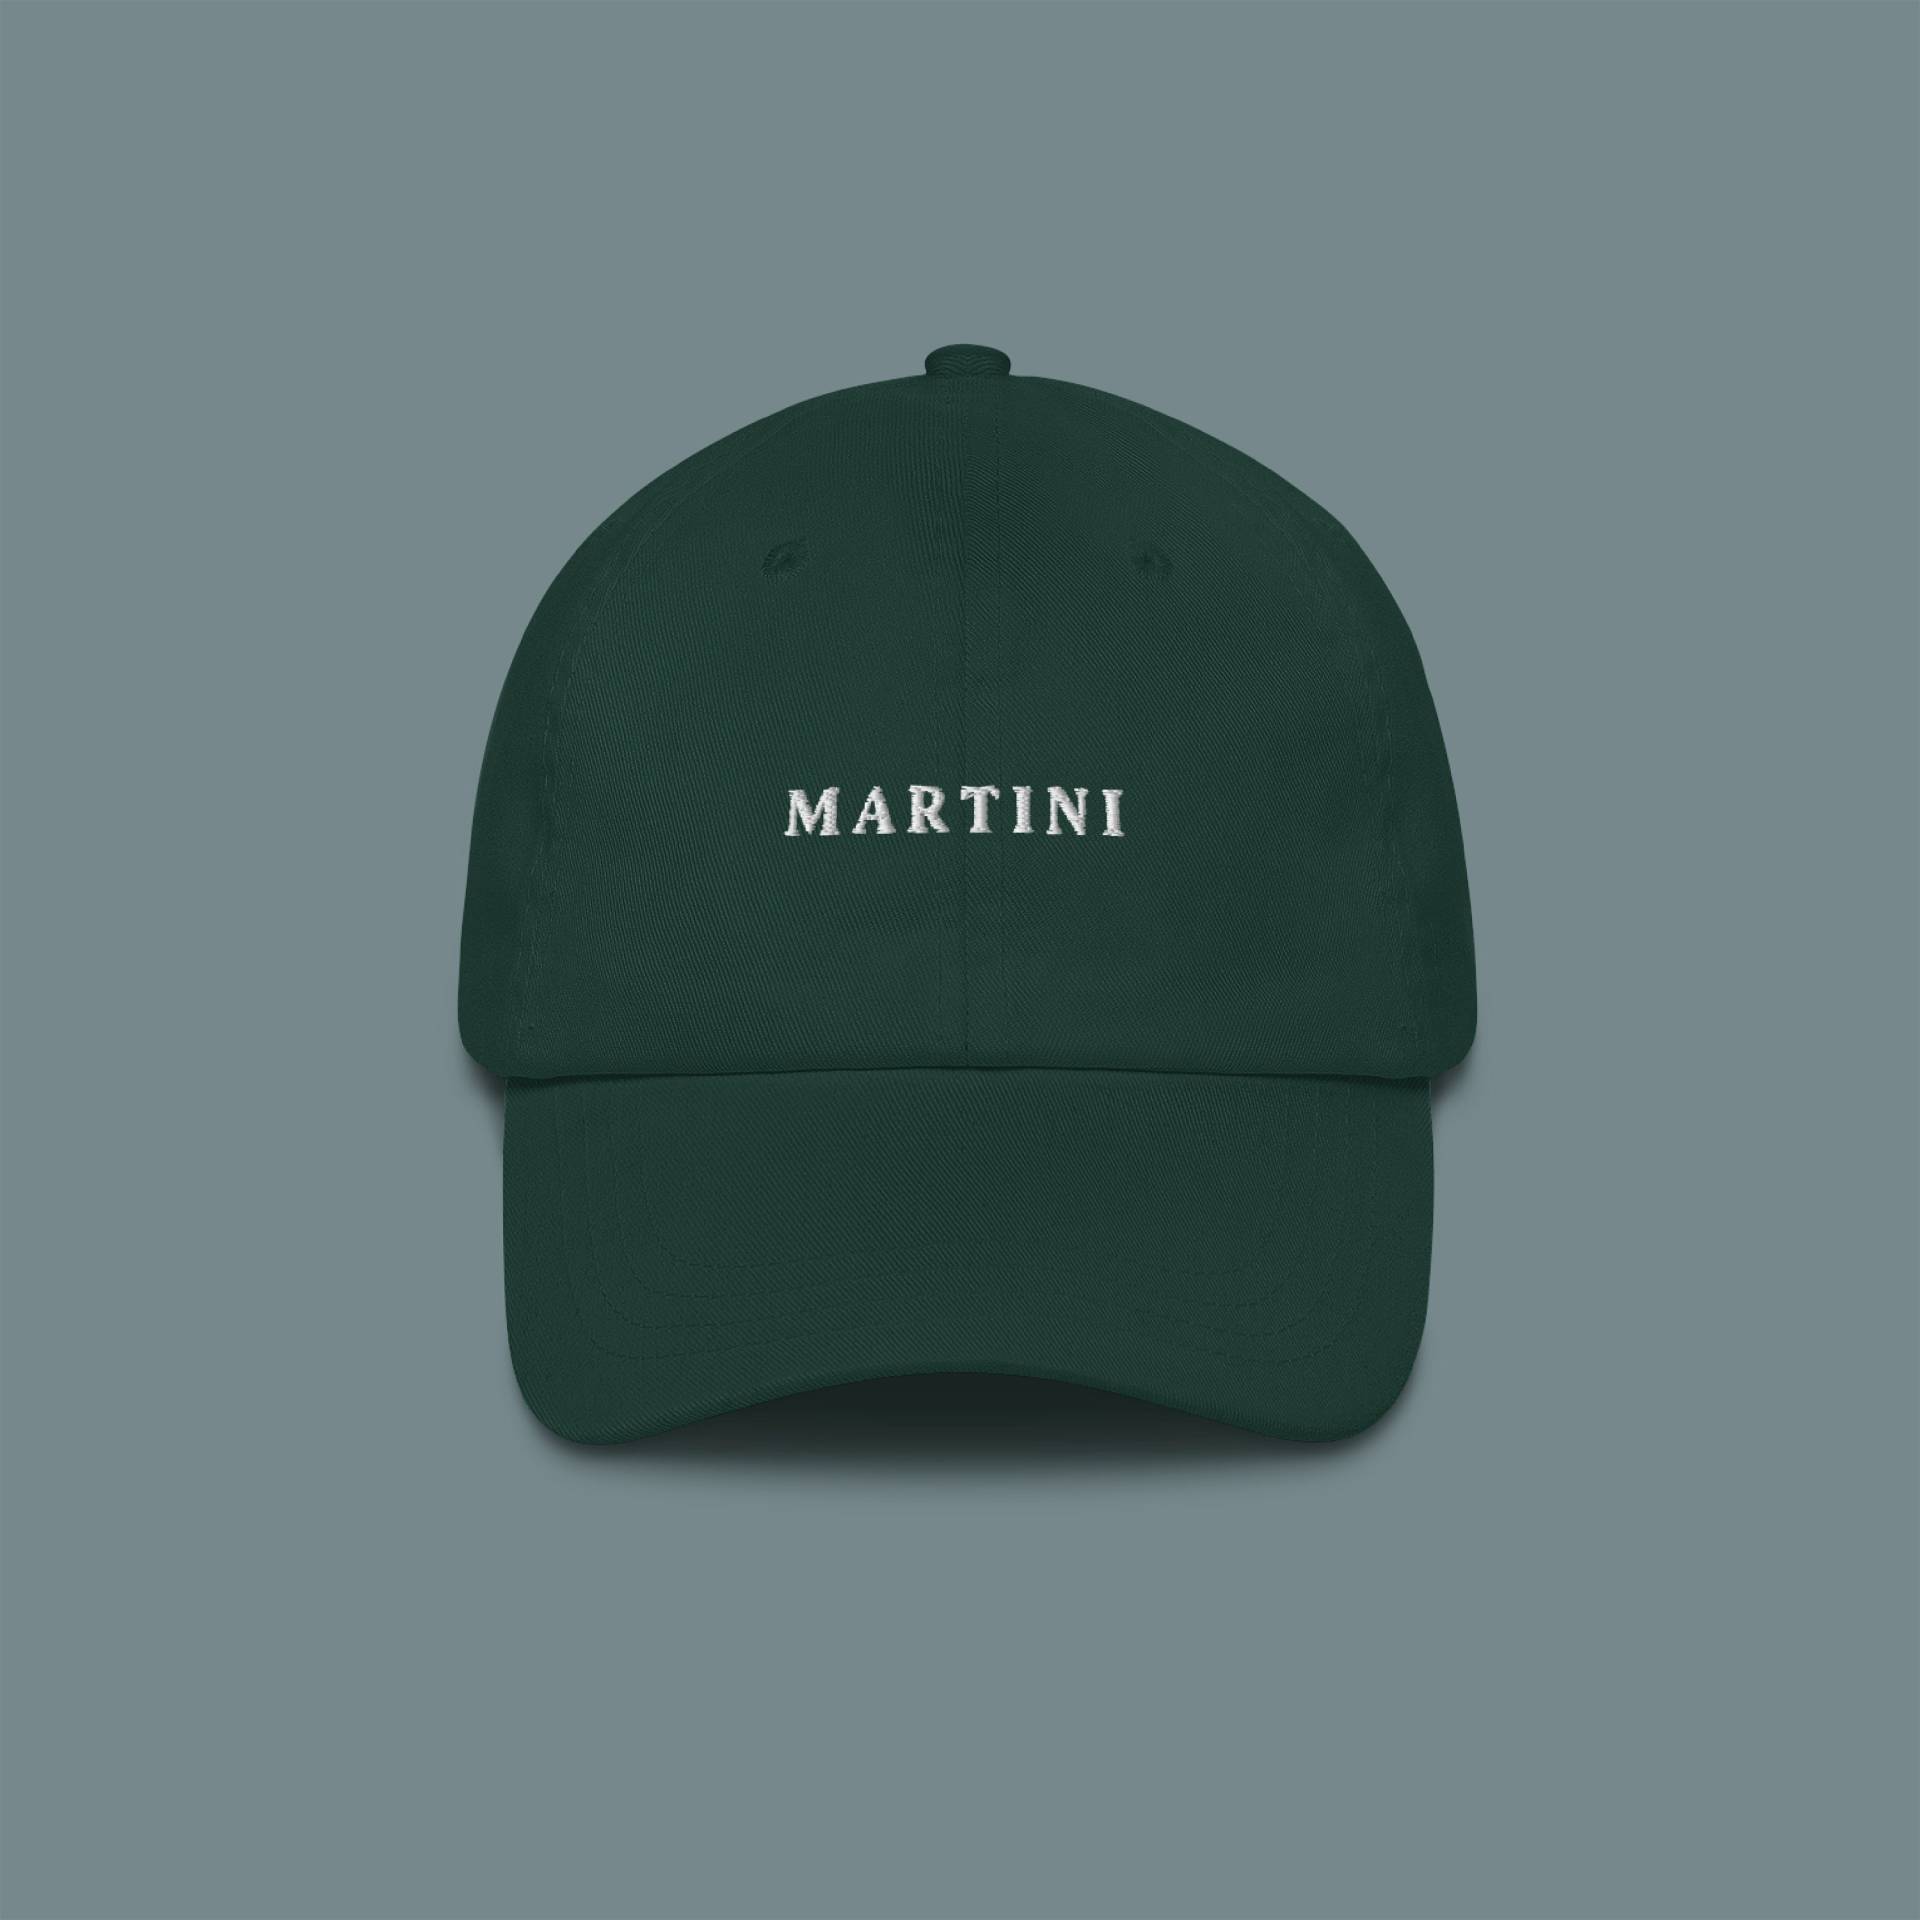 Martini - Bestickte Mütze von TheRefinedSpirit